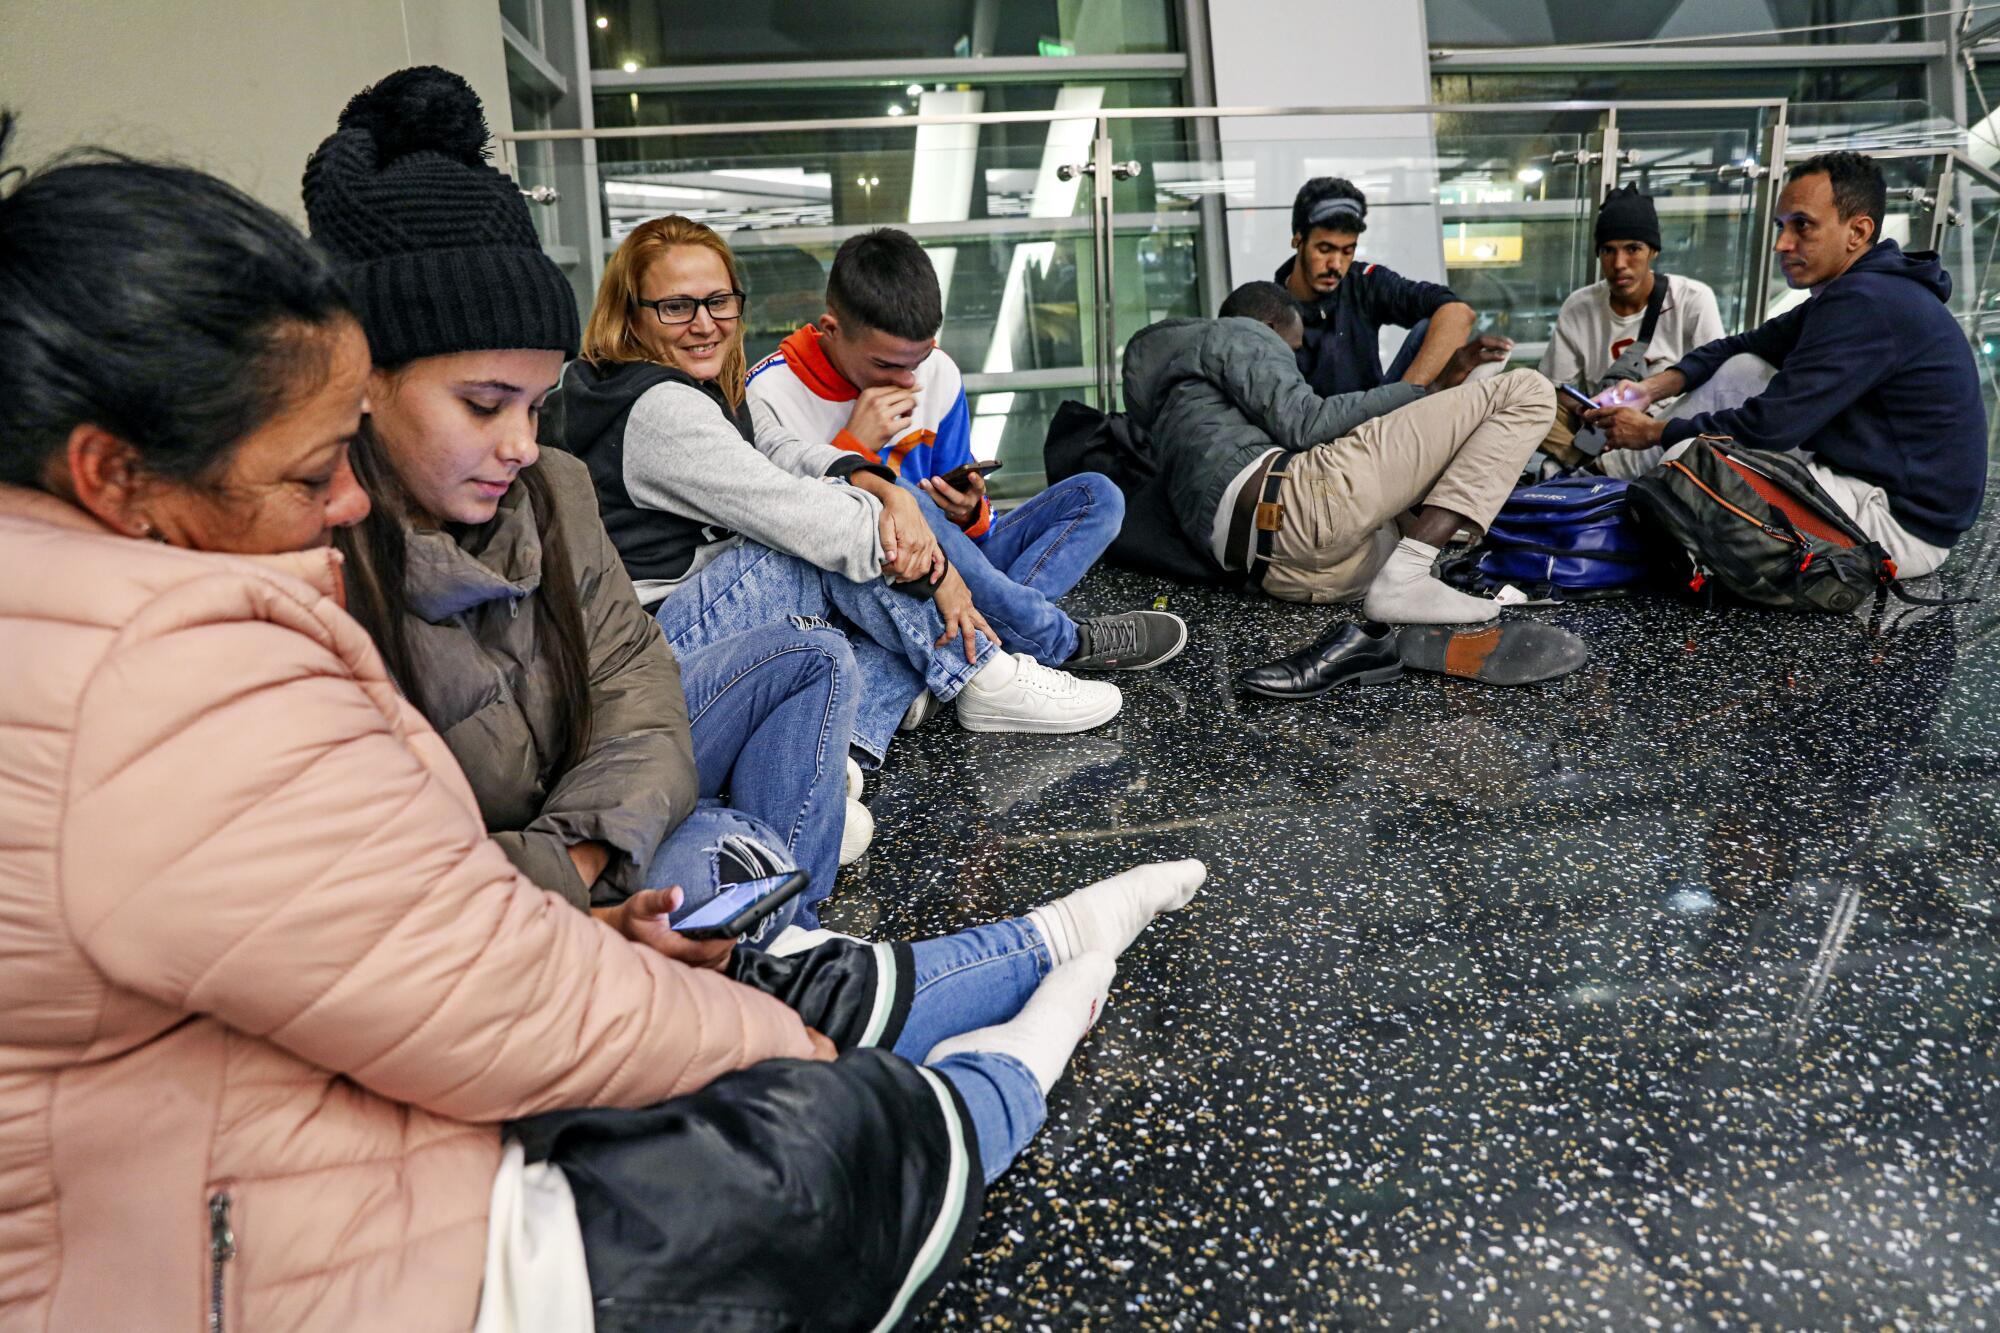 La familia Benavedes de Venezuela intenta ponerse cómoda mientras esperan los vuelos en el suelo.